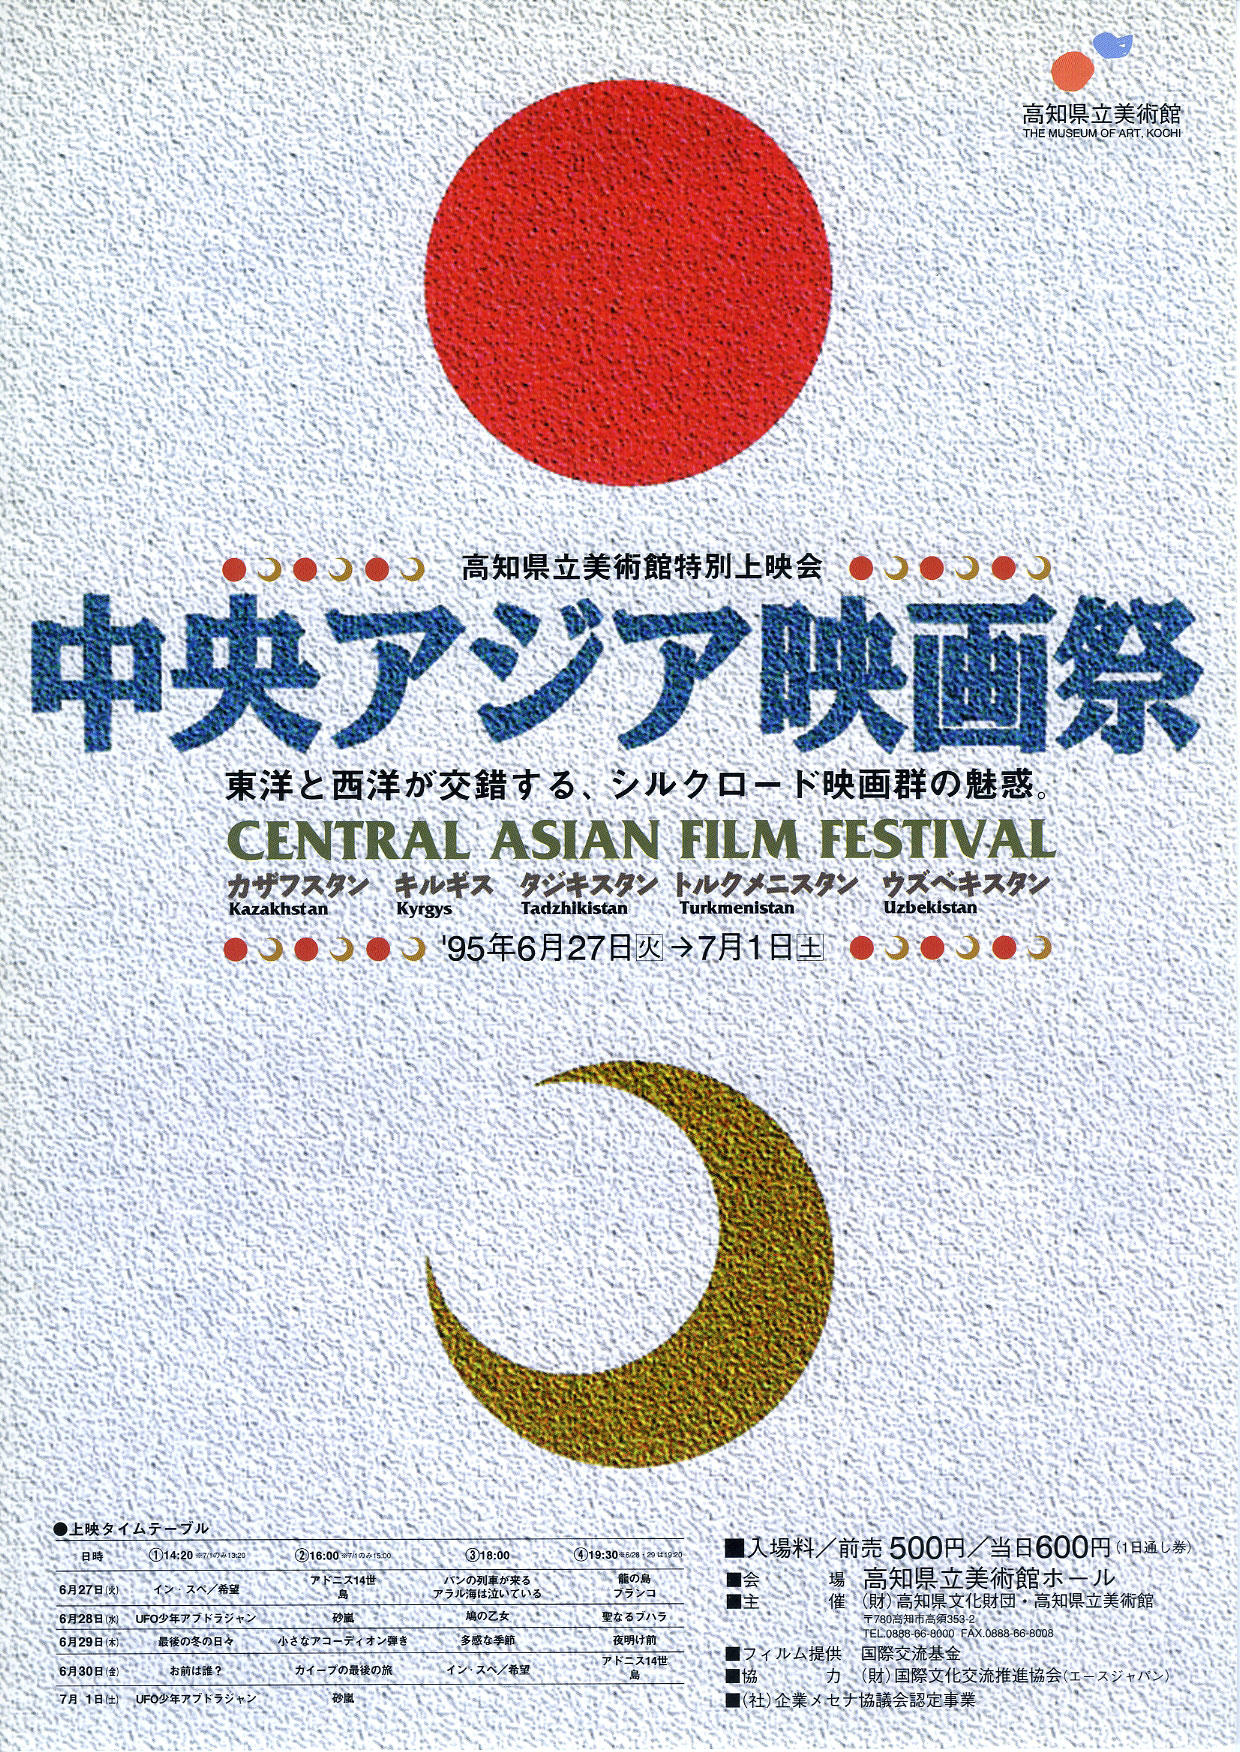 中央アジア映画祭 イベント 高知県立美術館